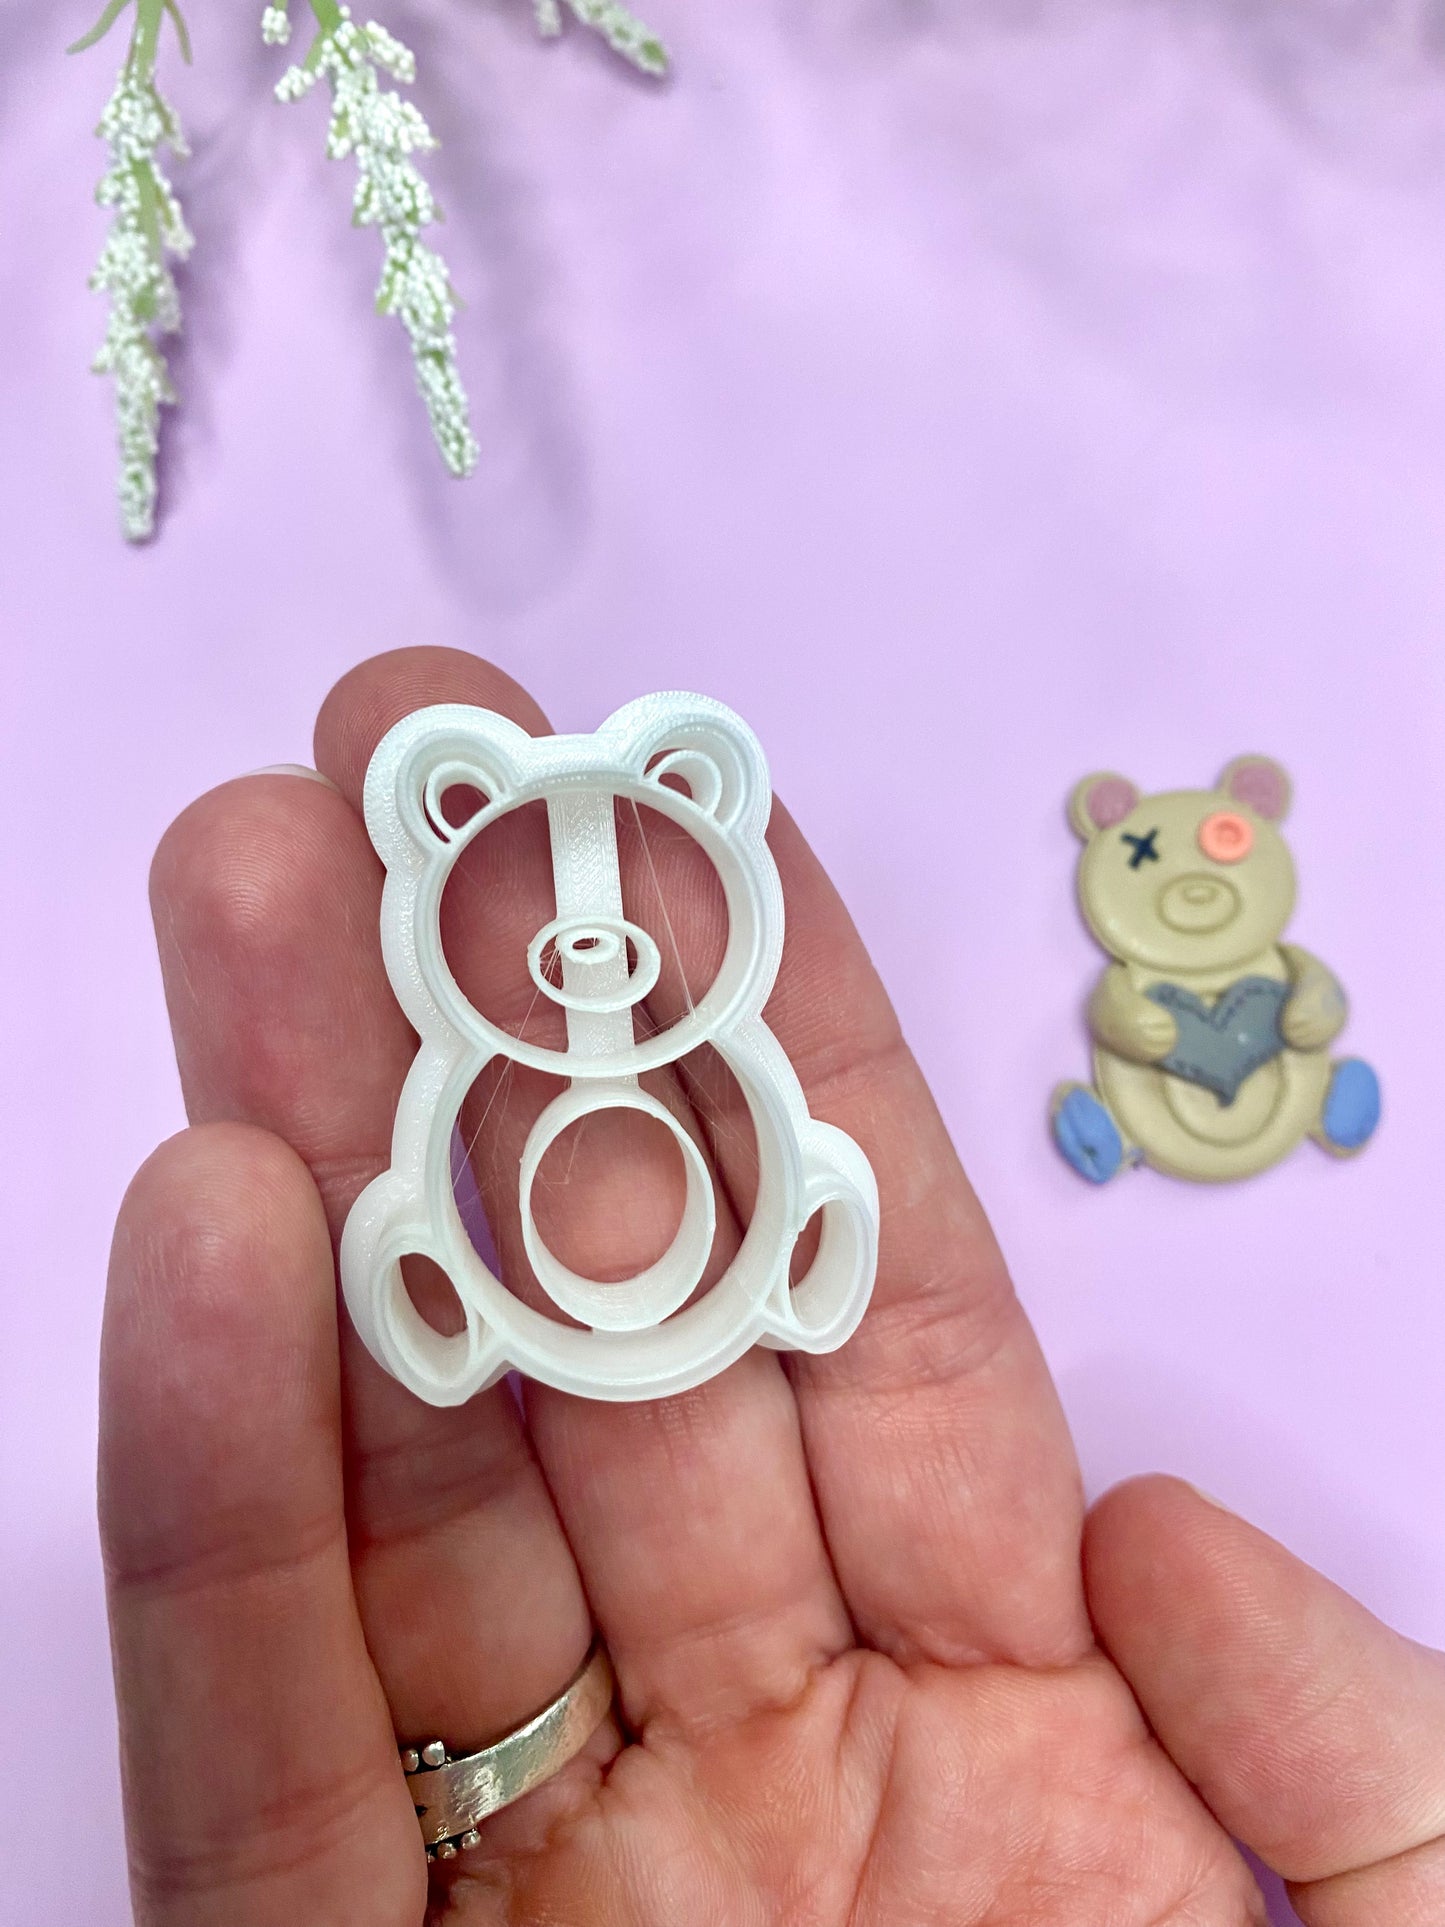 Teddy Bear - Polymer Clay Cutter